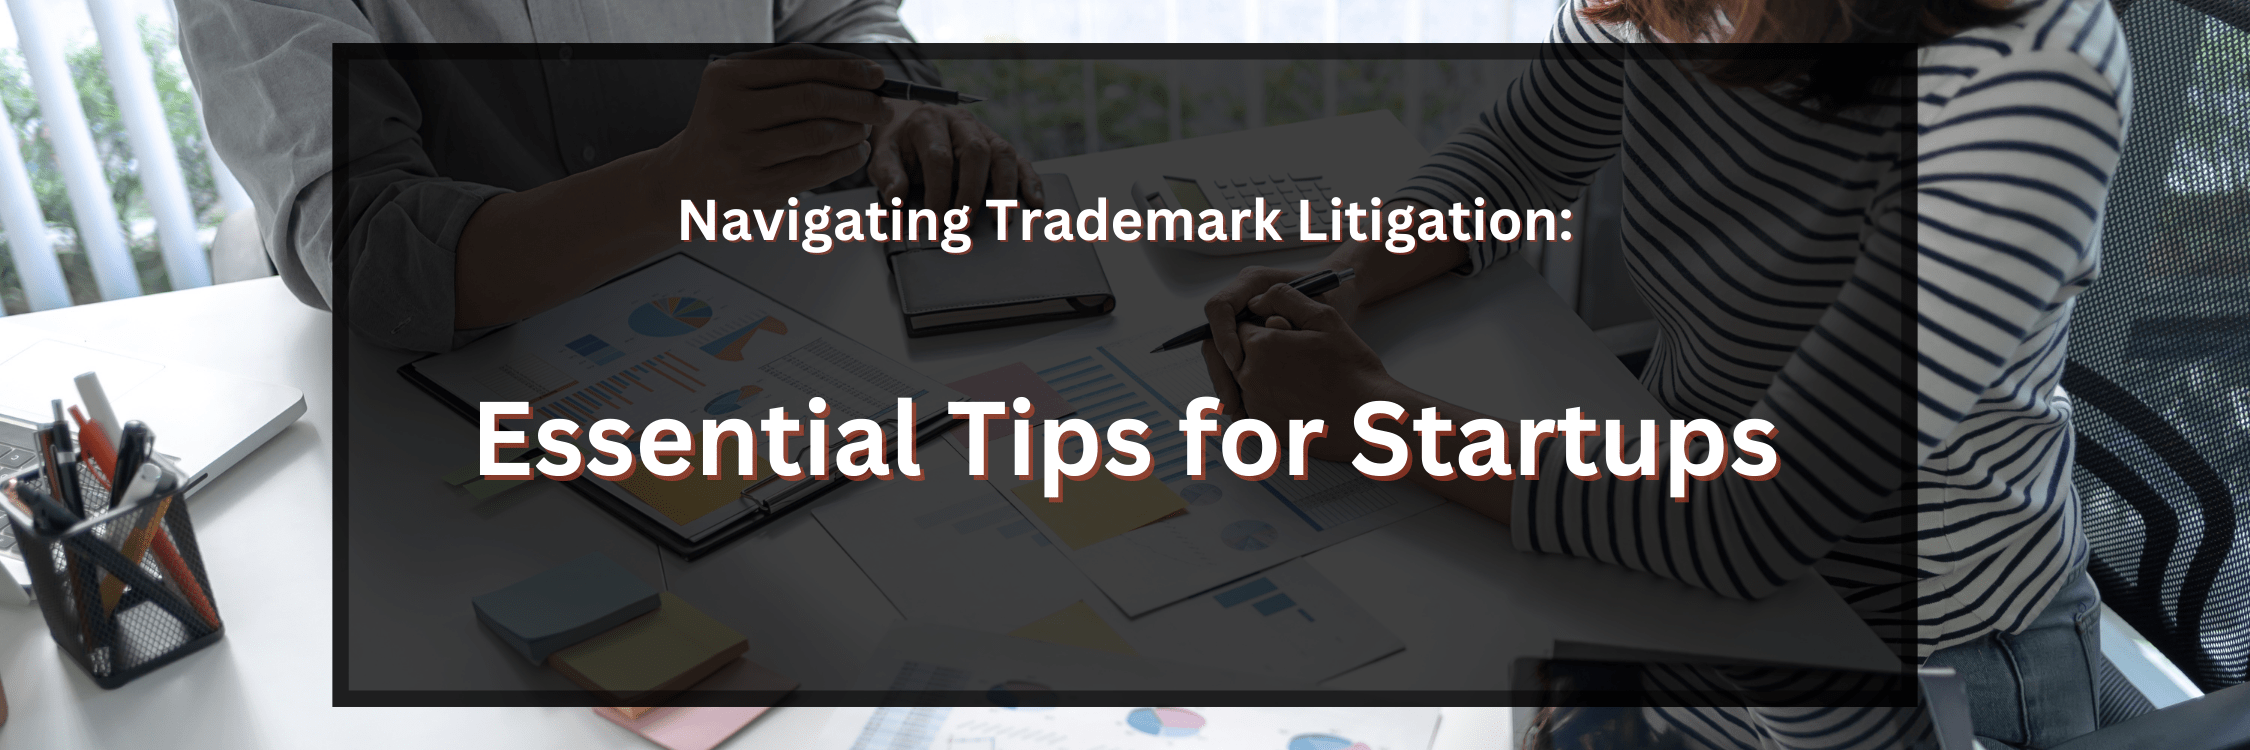 Navigating Trademark Litigation: Essential Tips for Startups